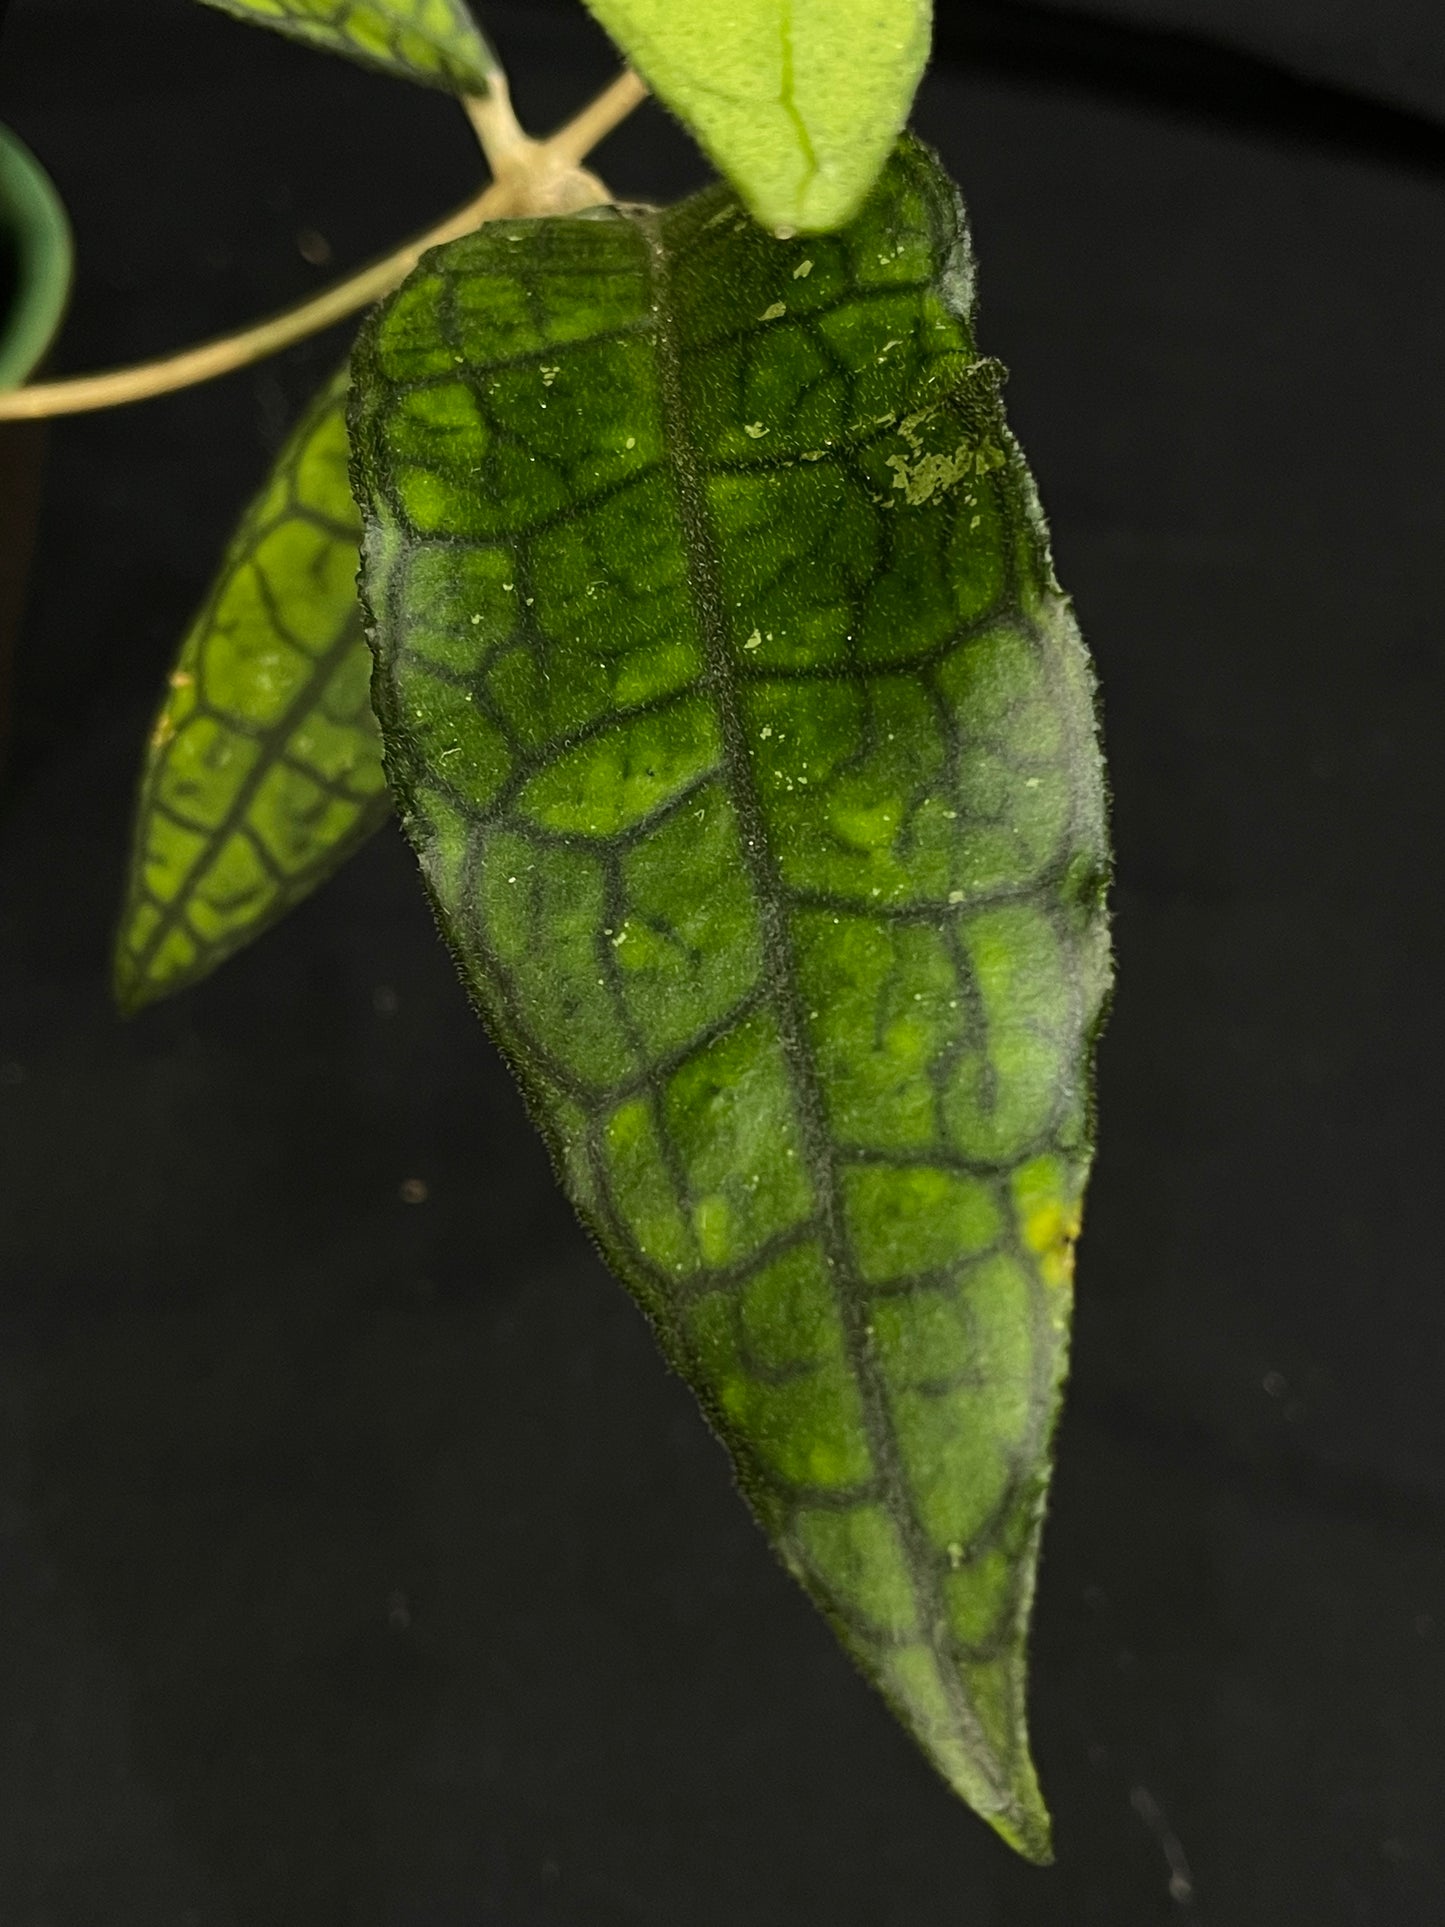 Hoya aff. finlaysonii, pretty veined leaves, big plant